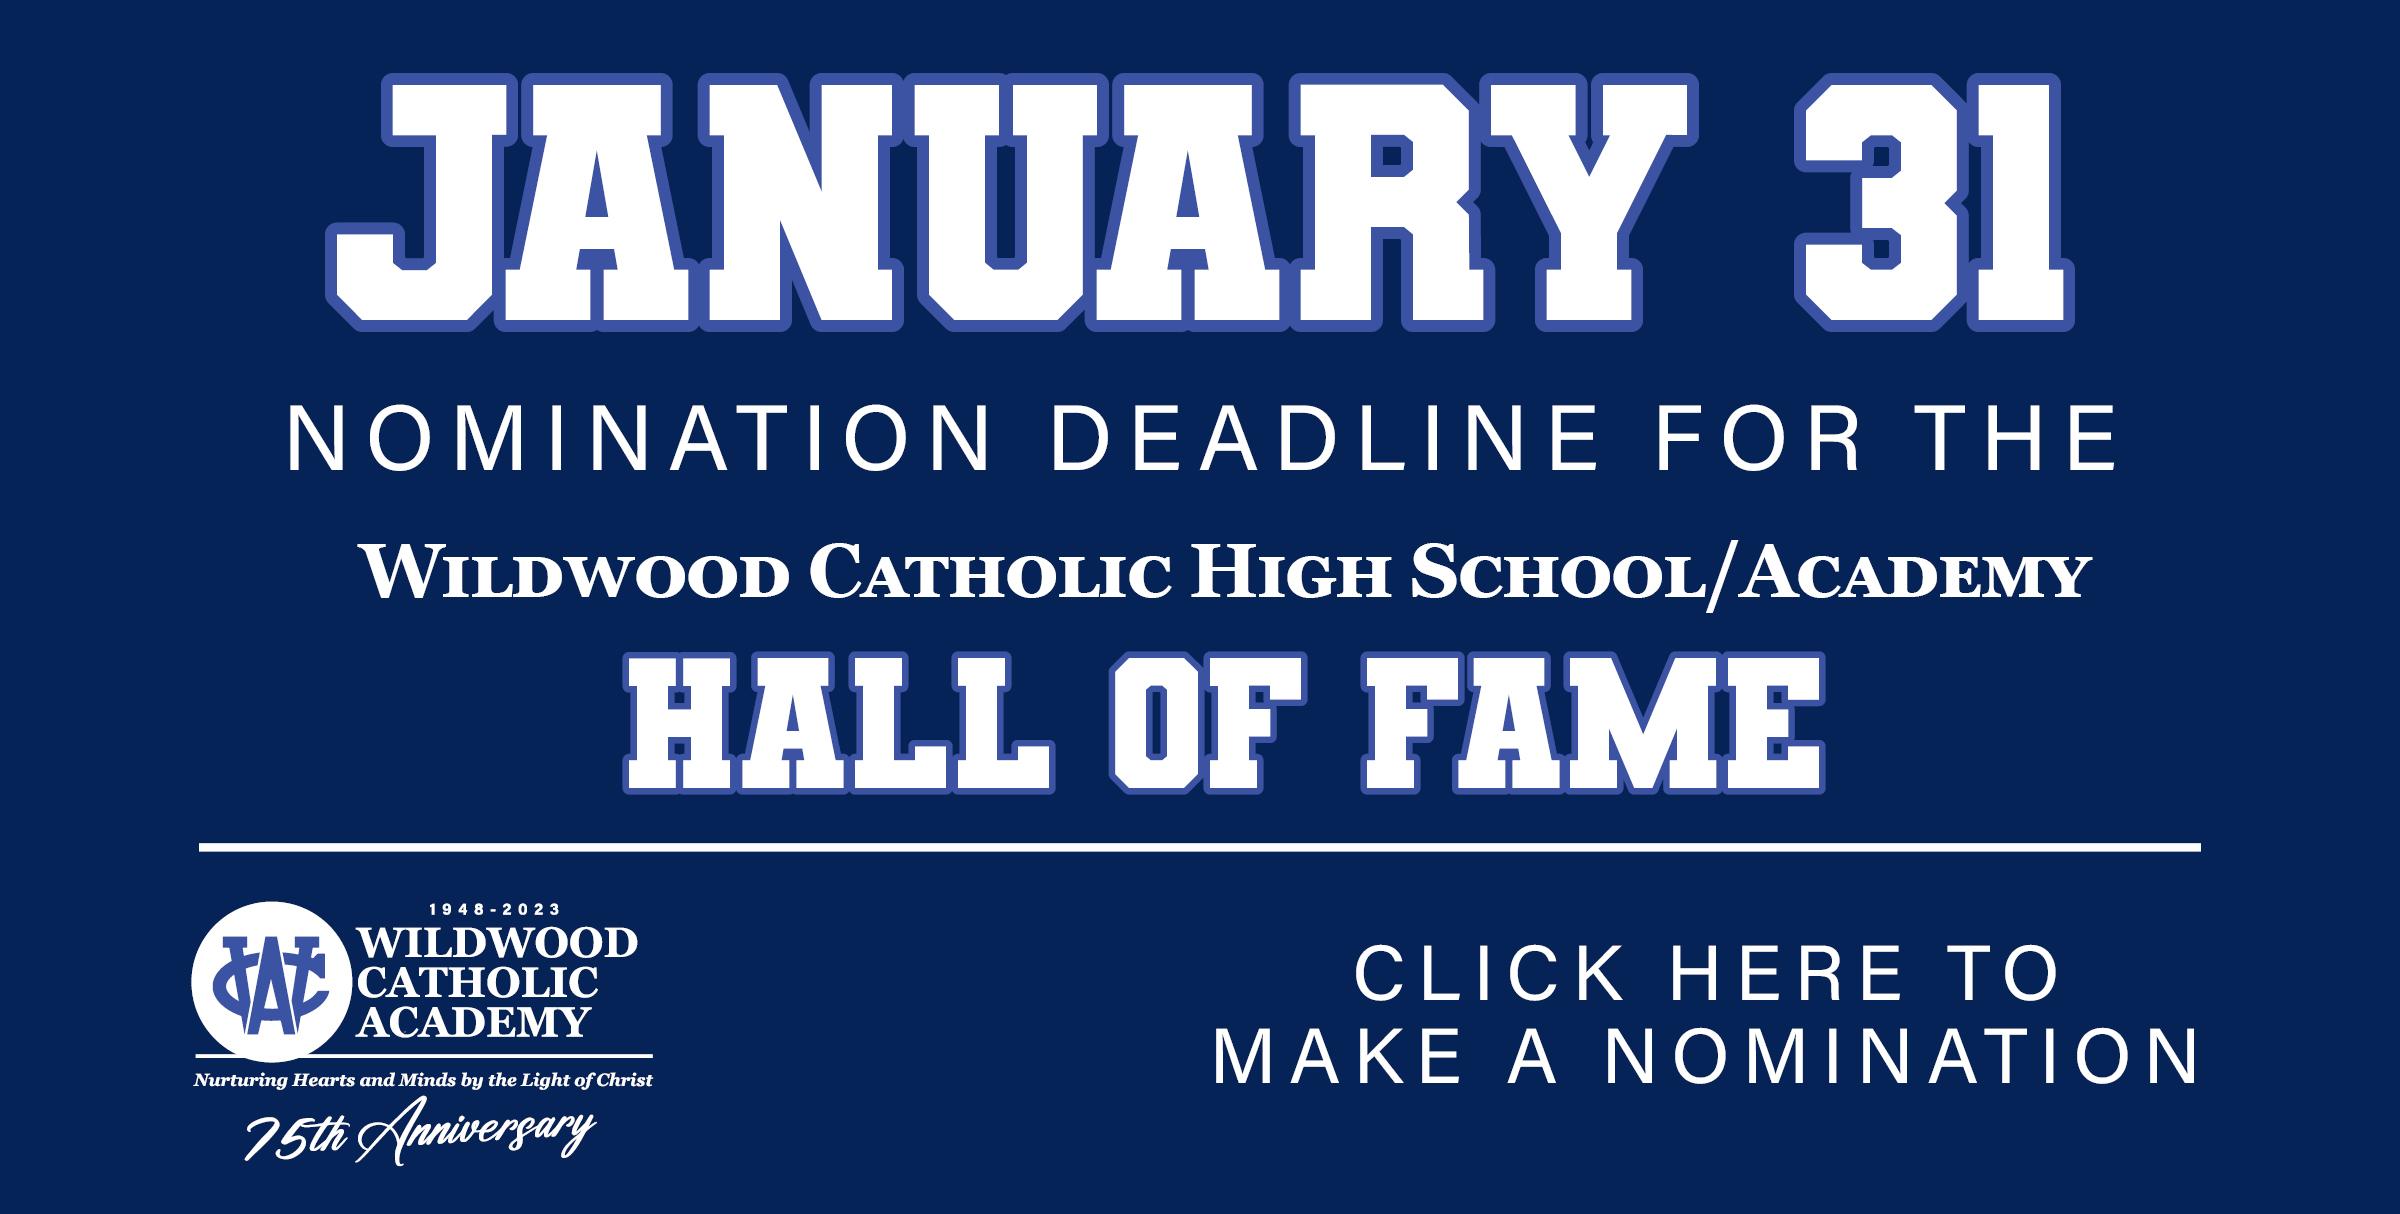 hall of fame deadline